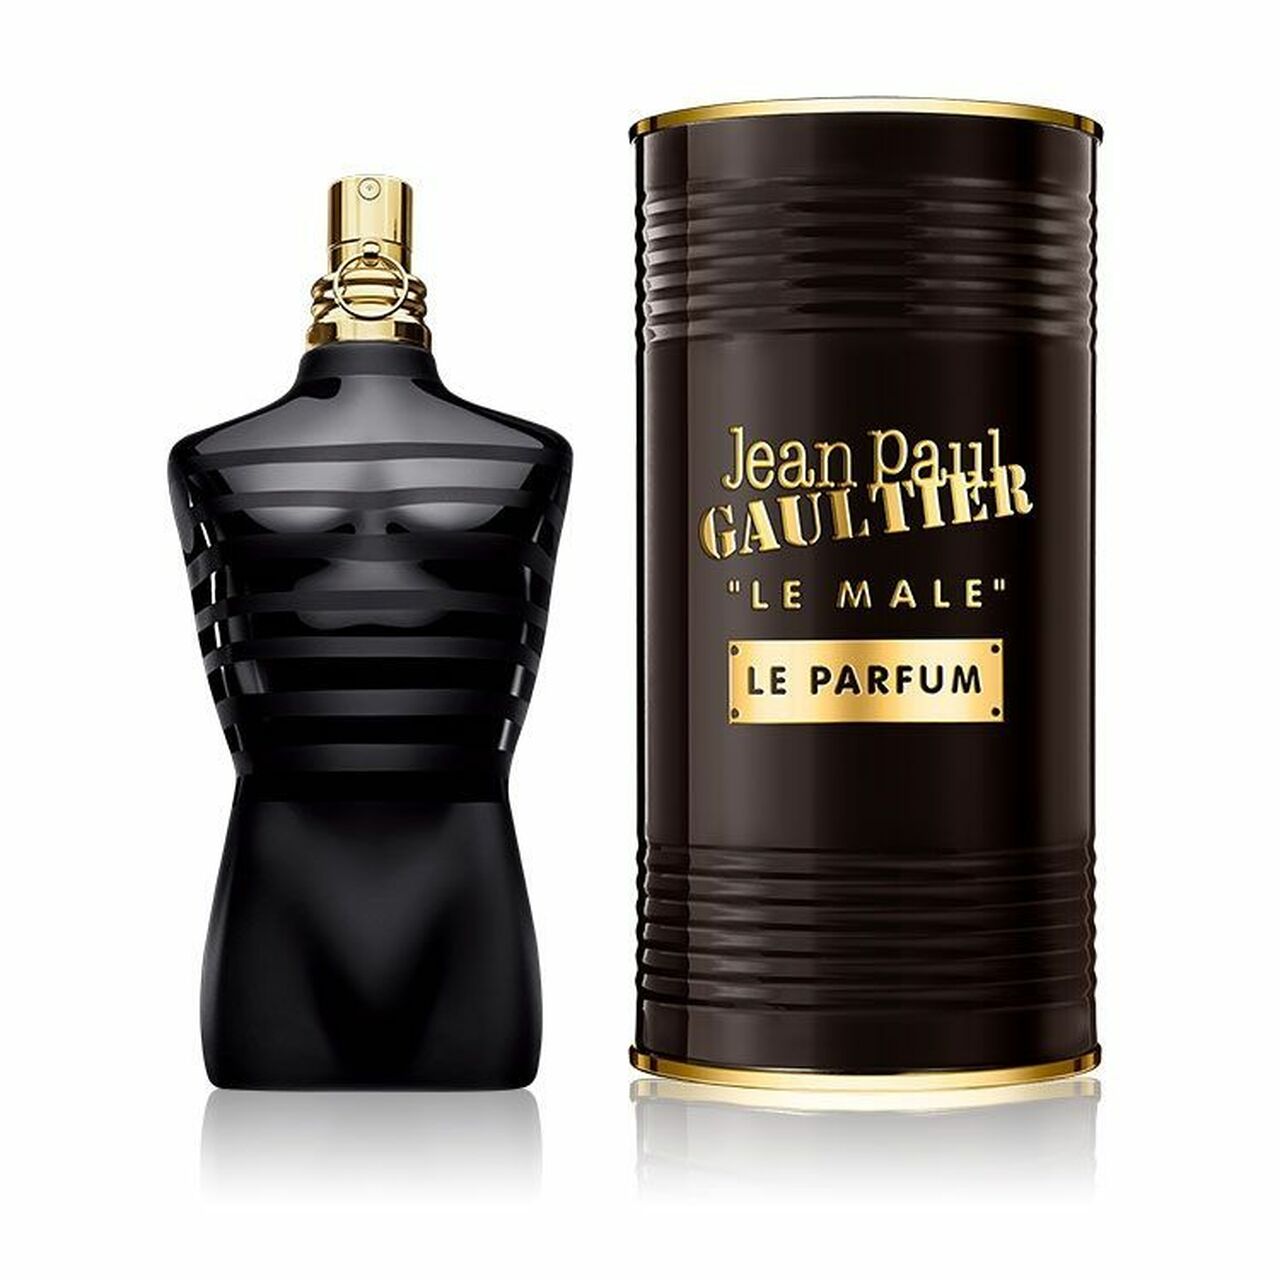 Le Male Le Parfum Jean Paul Gaultier cologne - a fragrance for men